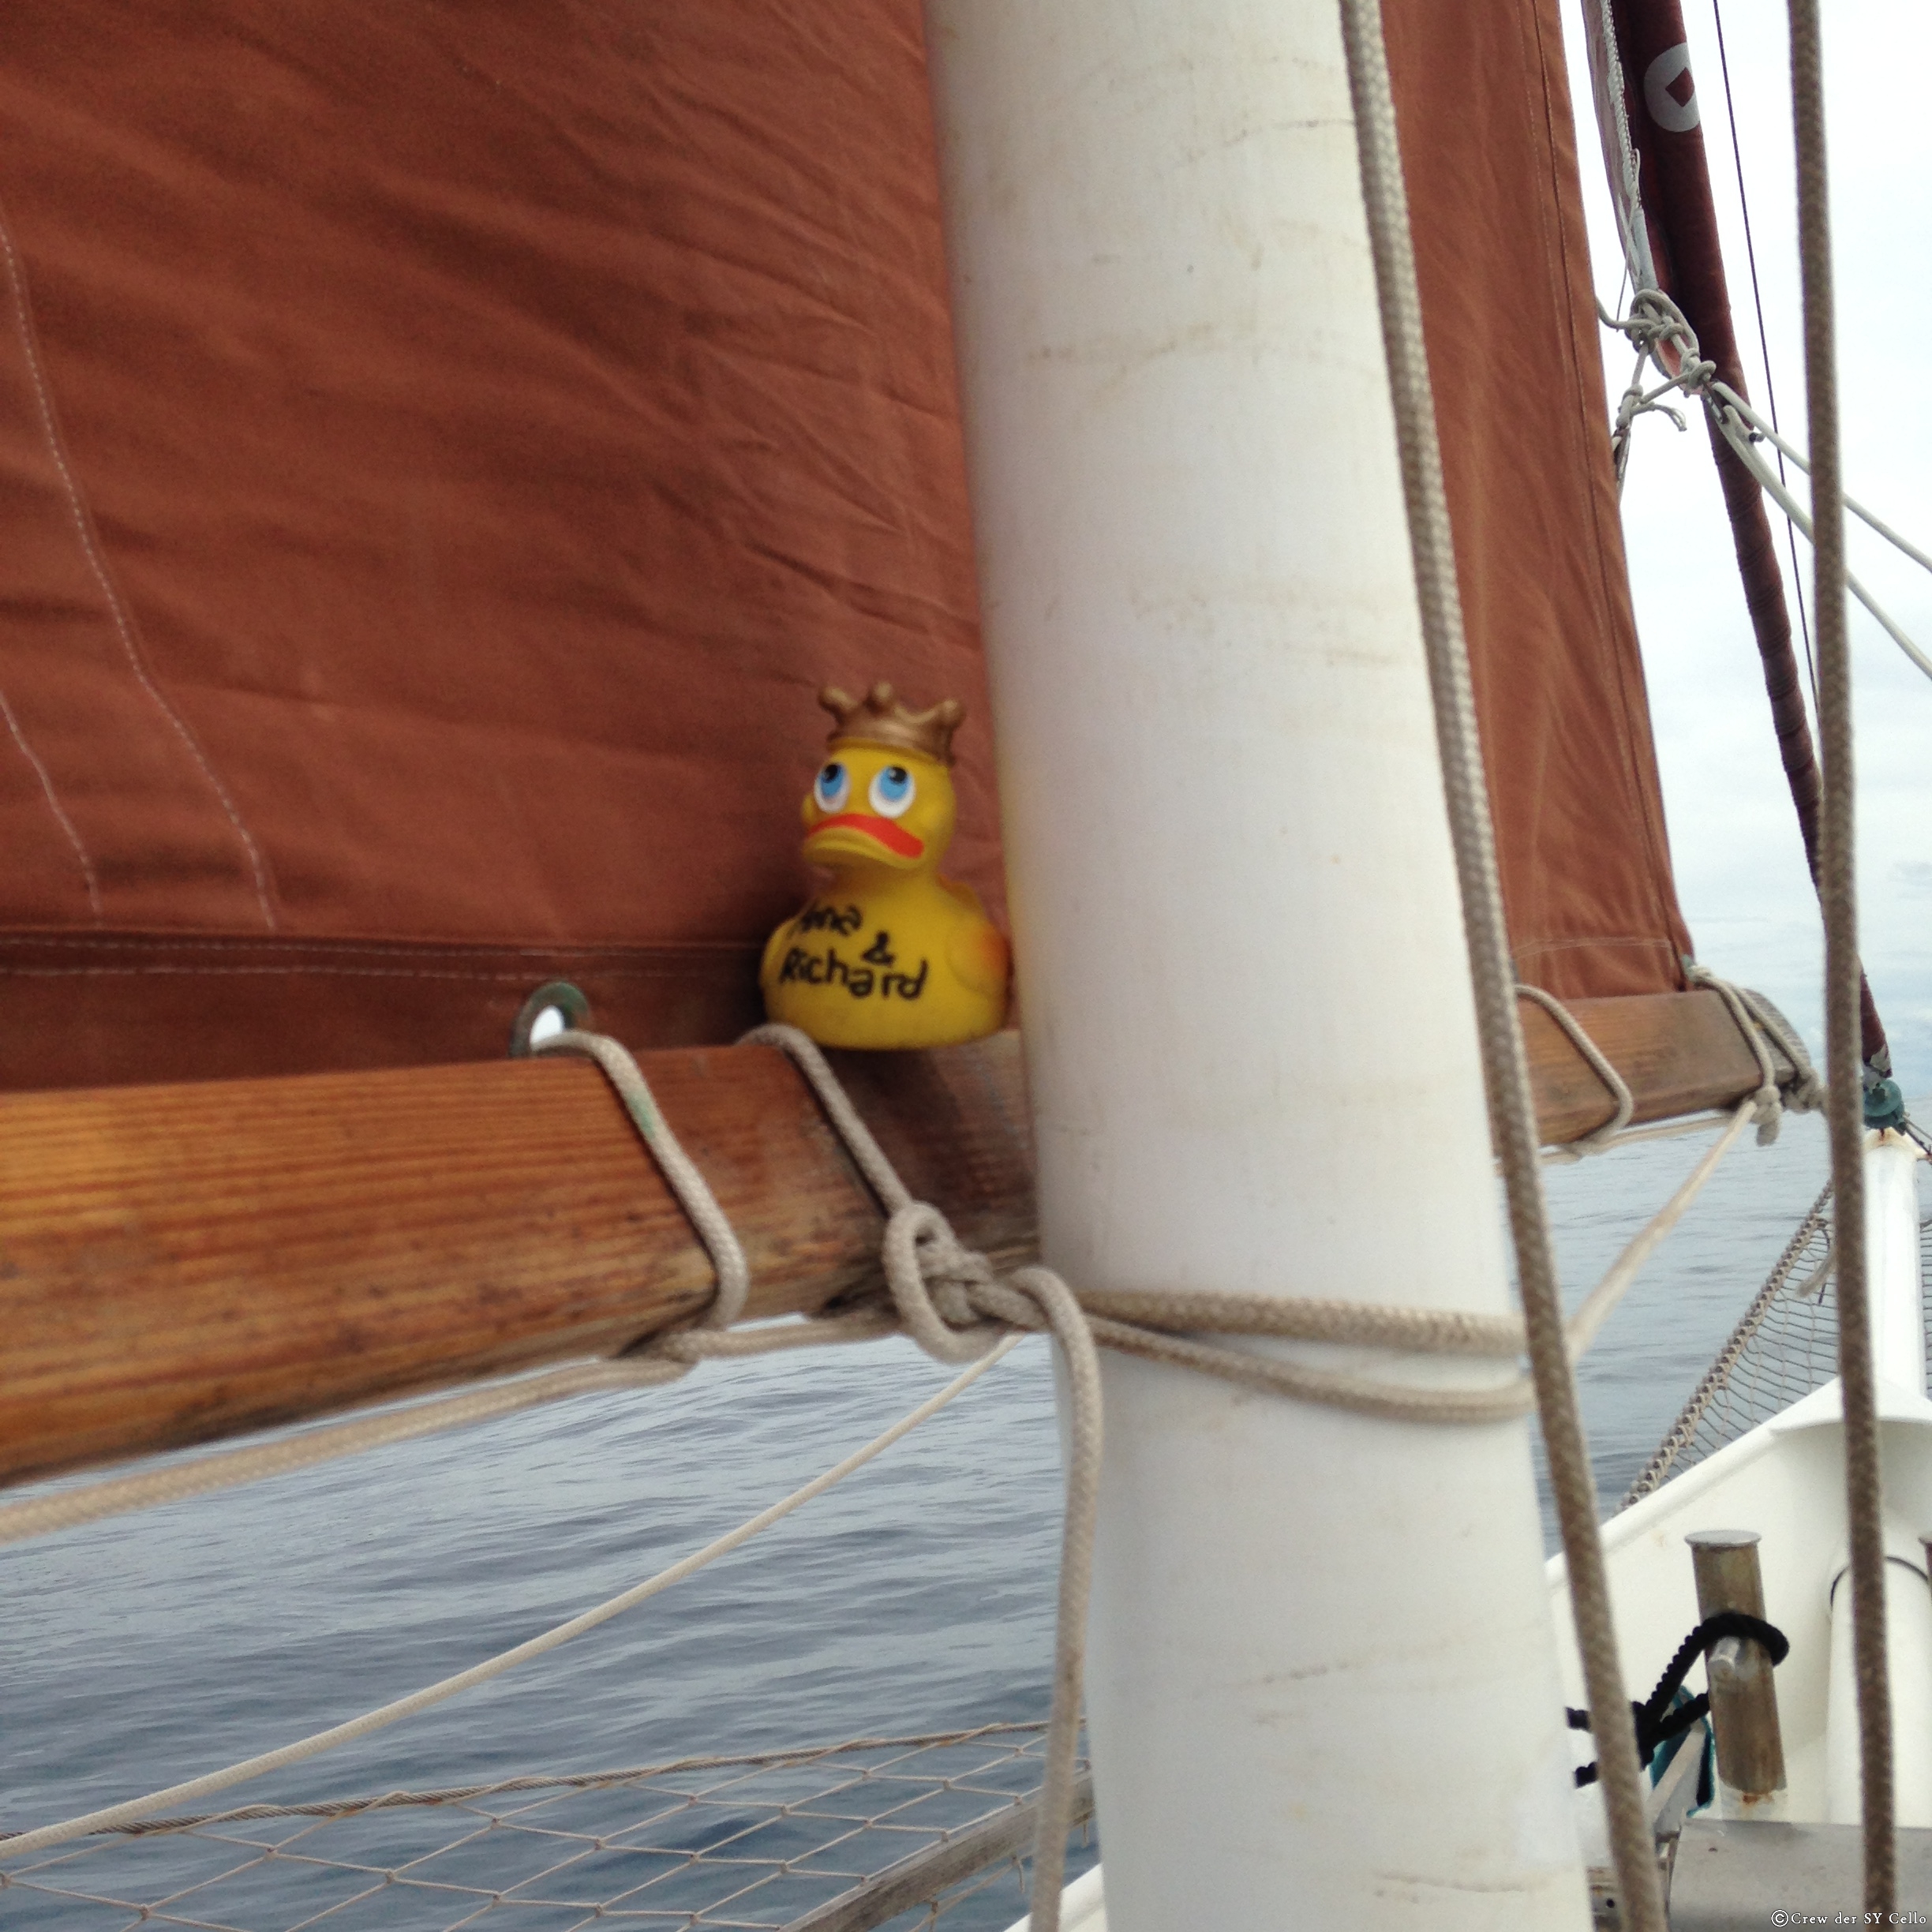 Grüße von einer unserer Enten vom Schiff &lsquo;Madrugada&rsquo;